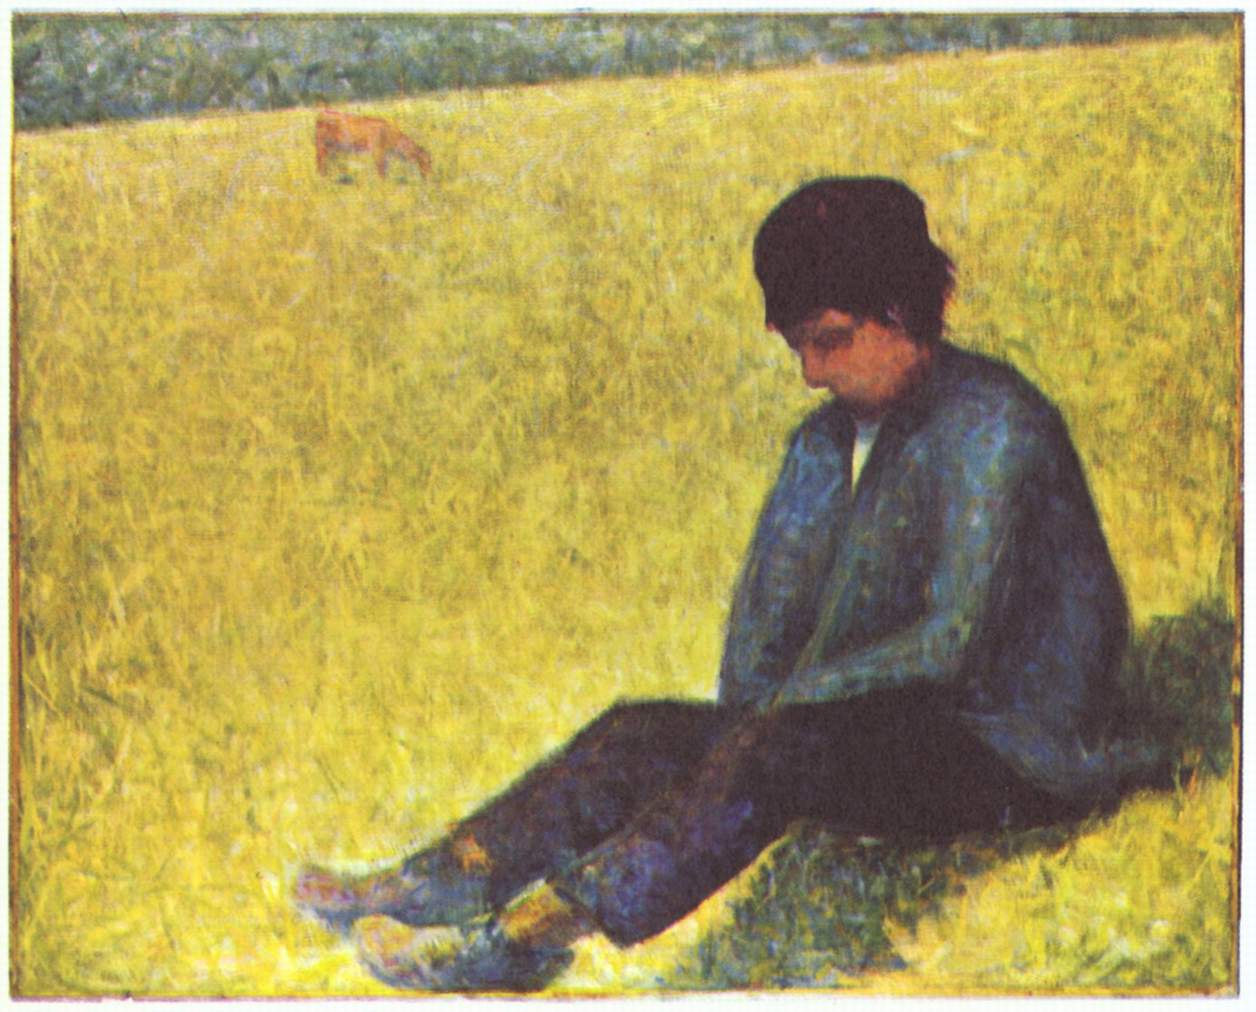 Жорж Сёра - Крестьянский мальчик сидит налугу 1882-1883